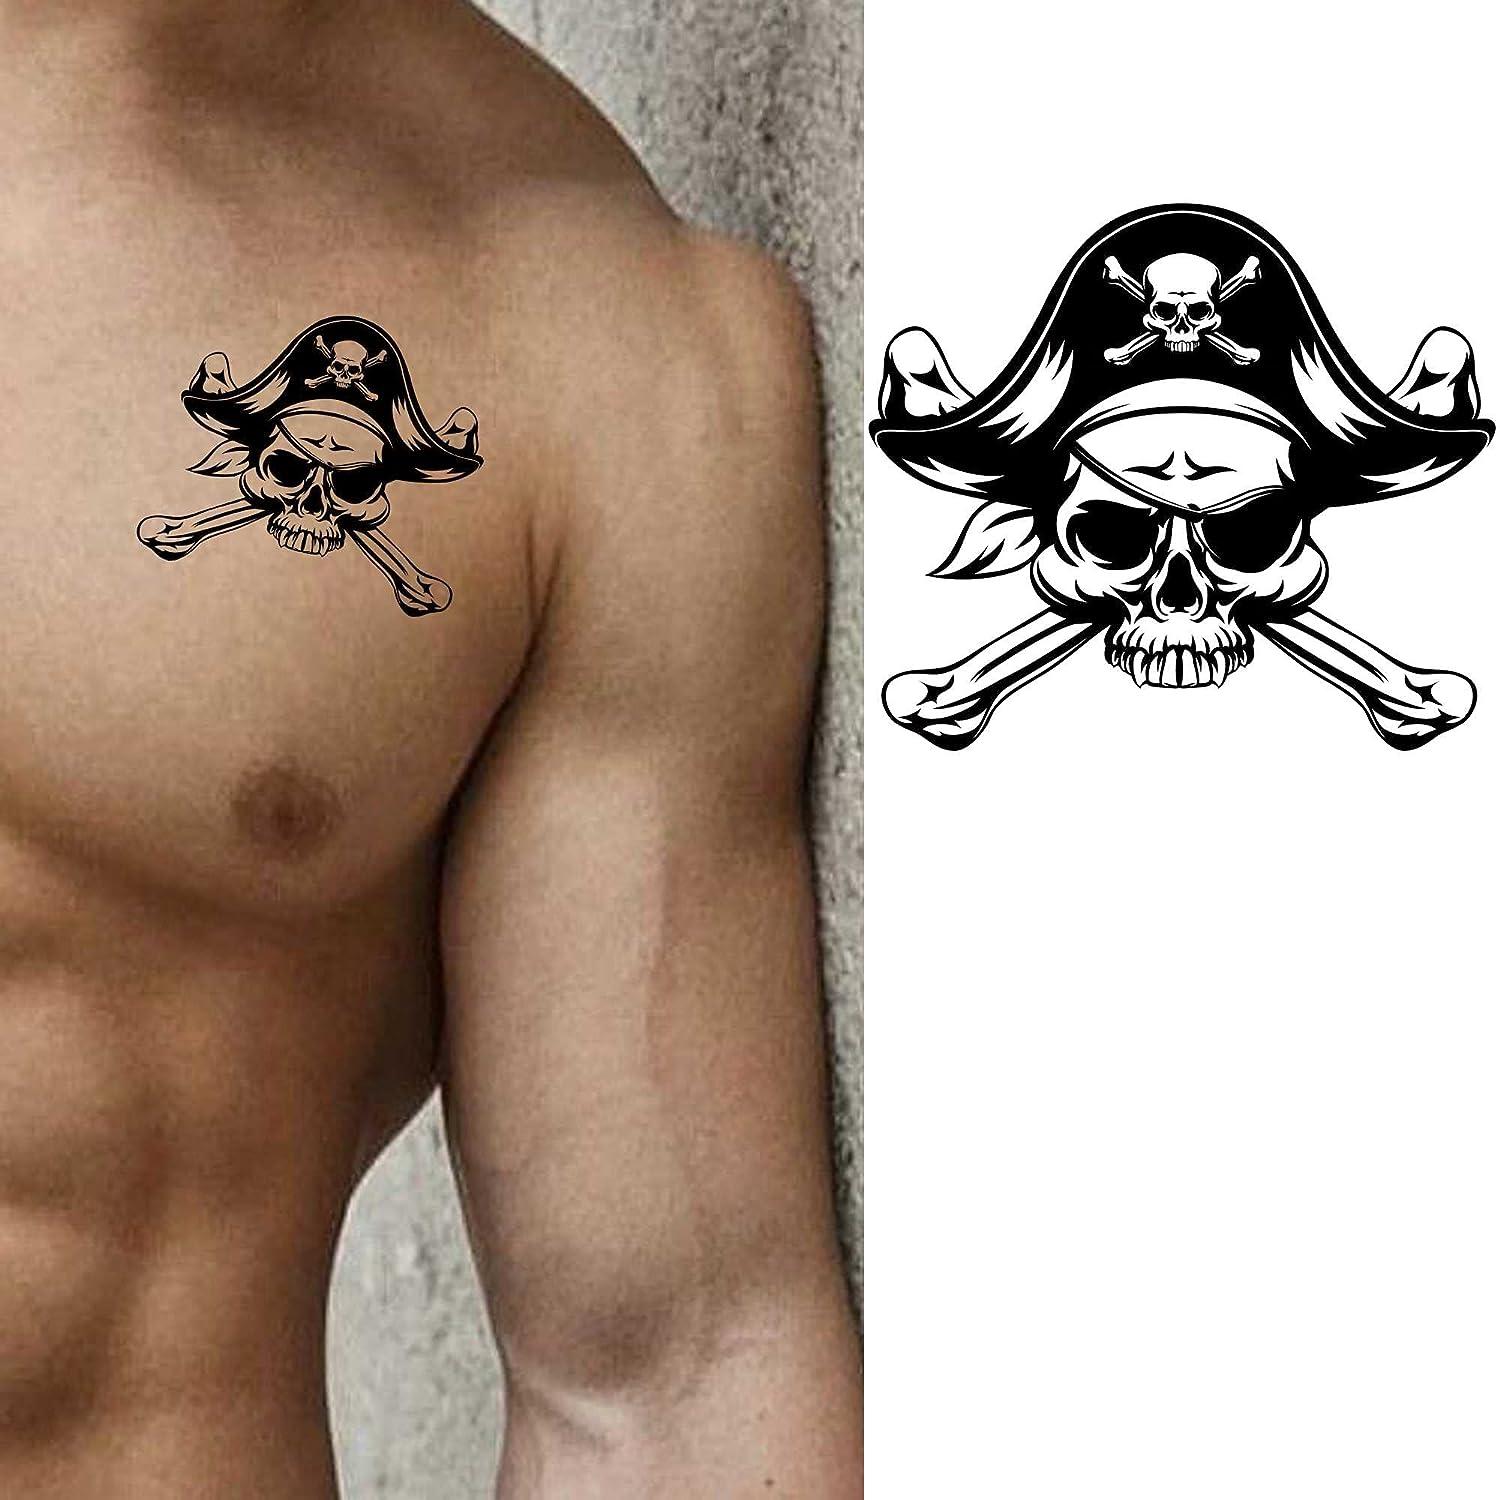 Modern Pirate tattoo - Best Tattoo Ideas Gallery